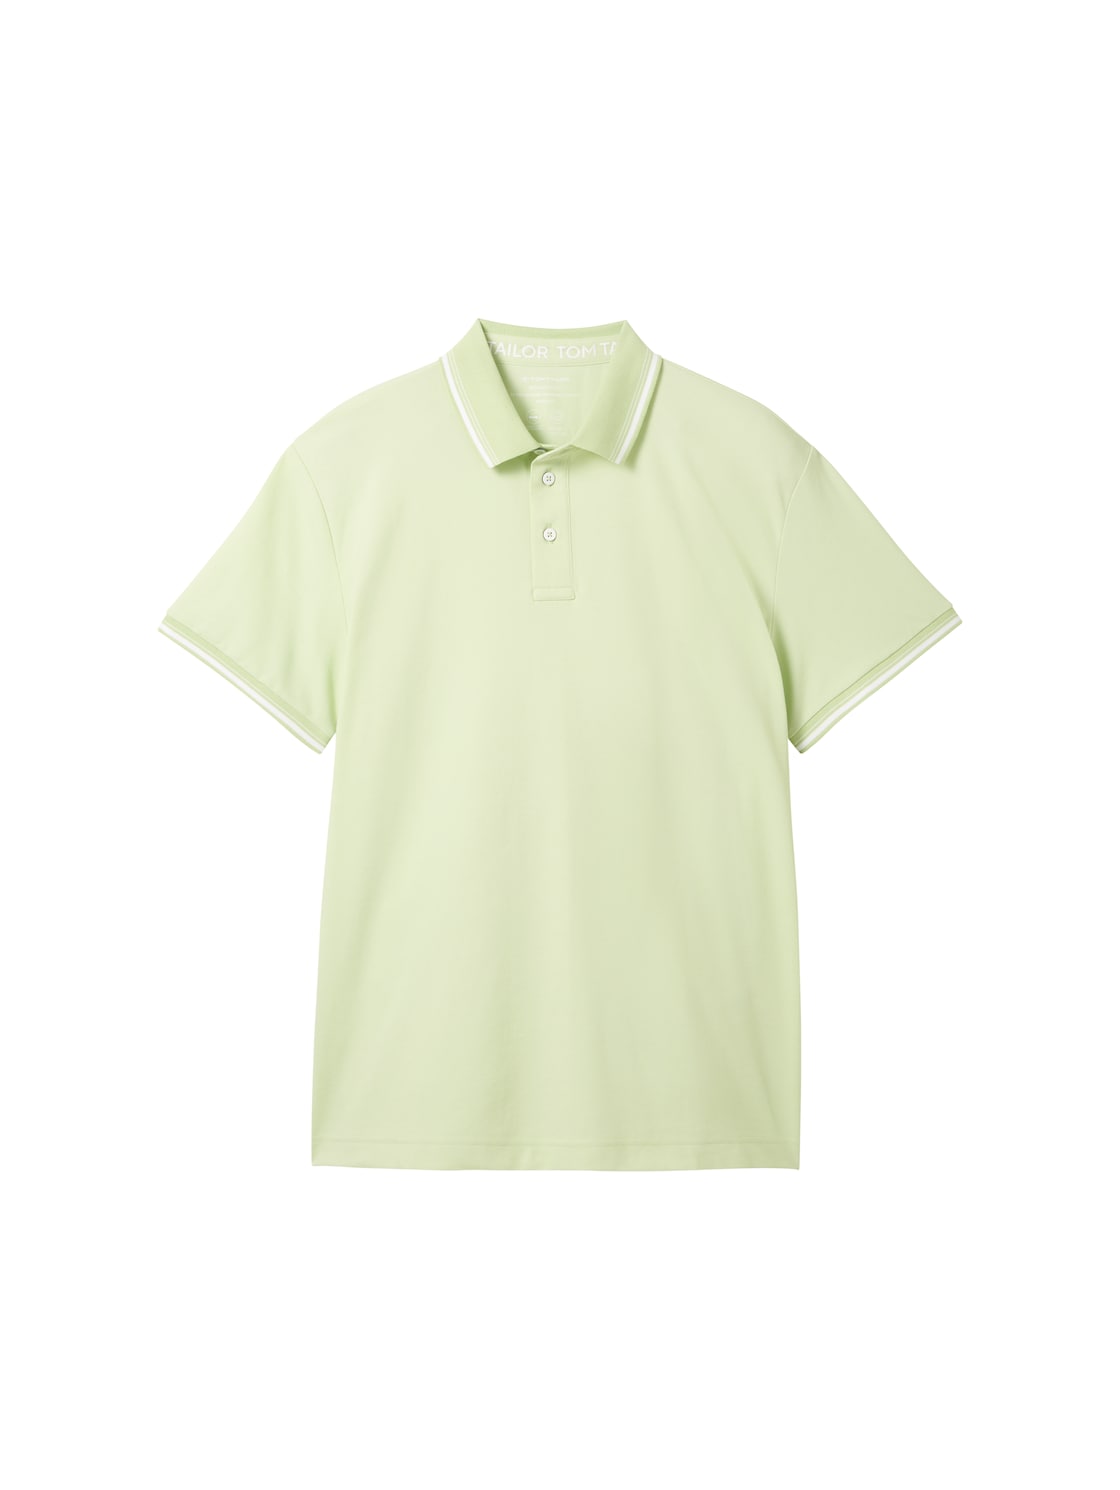 TOM TAILOR Herren COOLMAX® Poloshirt, grün, Uni, Gr. M von Tom Tailor